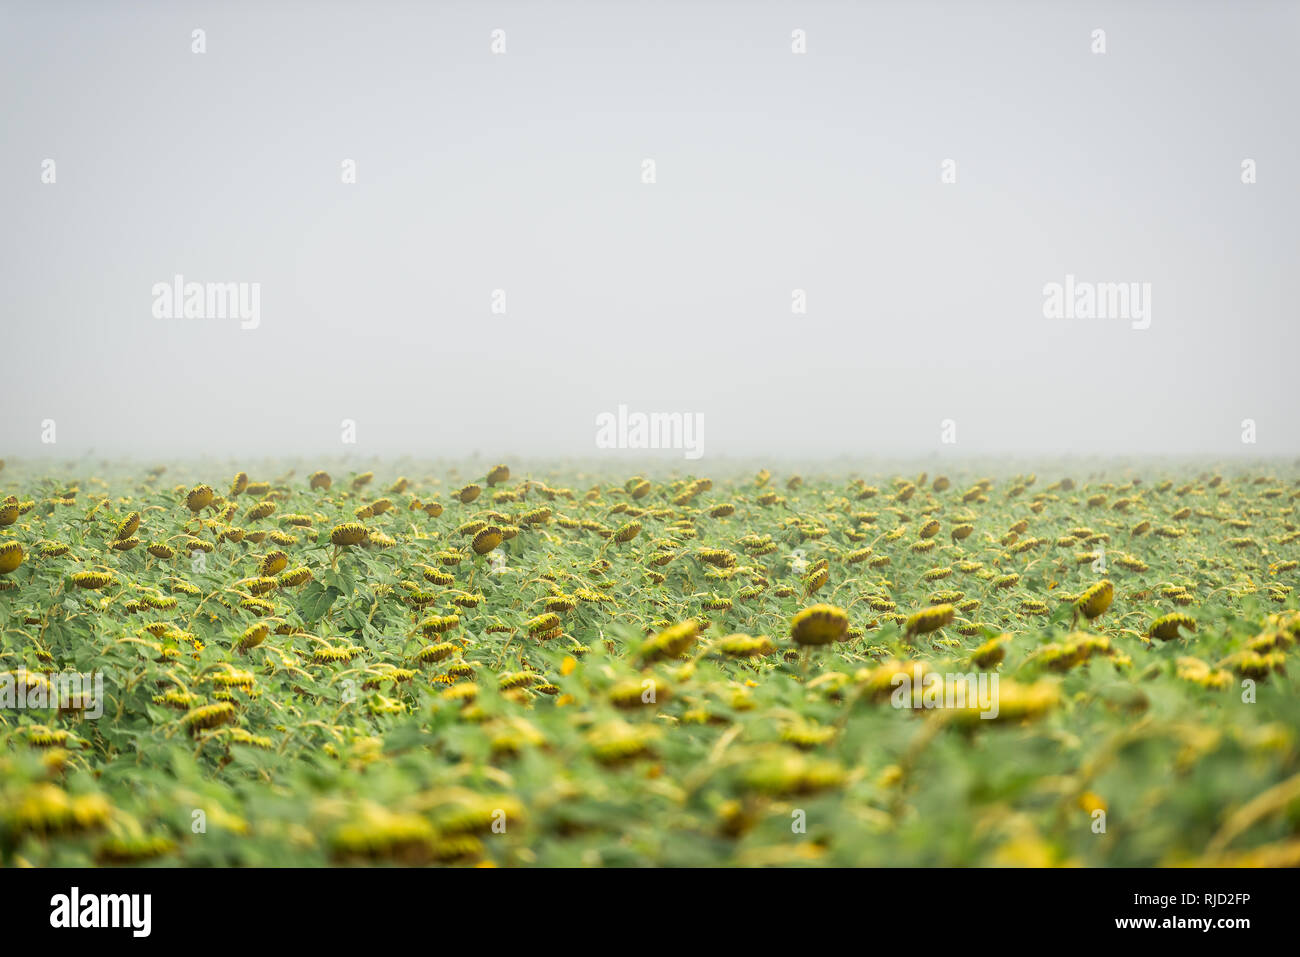 Viele Sonnenblumen Blumen für die Ernte in der Landwirtschaft Bauernhof Feld am Morgen Nebel Nebel Wetter mit Horizont und Bokeh Stockfoto